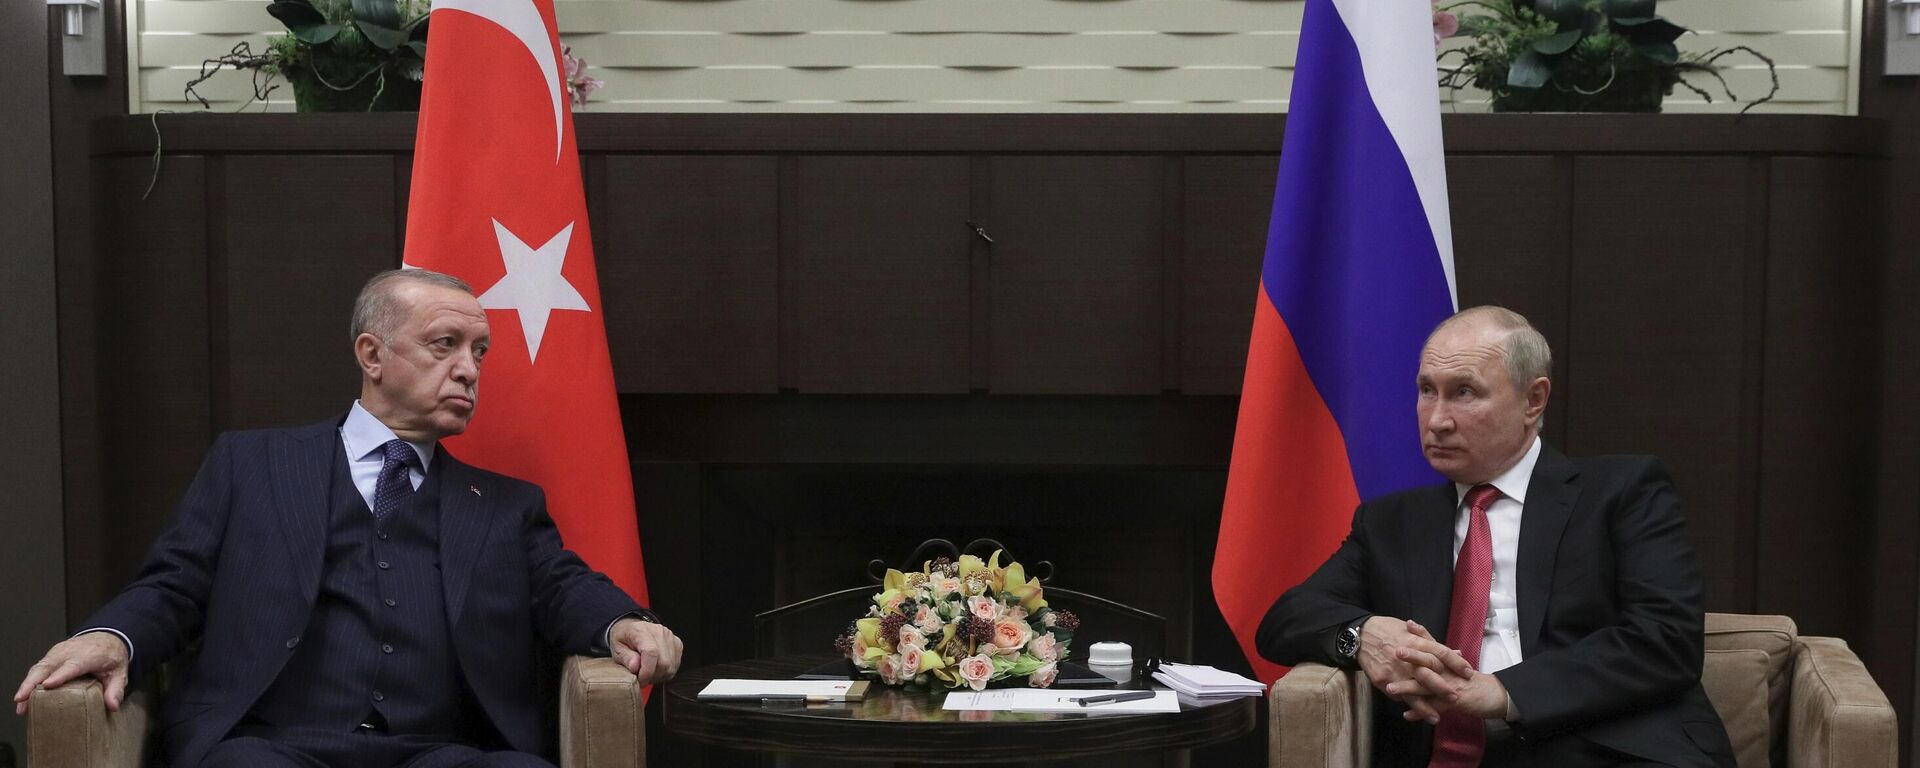 Президент РФ В. Путин провел переговоры с президентом Турции Р. Эрдоганом - Sputnik Молдова, 1920, 29.09.2021